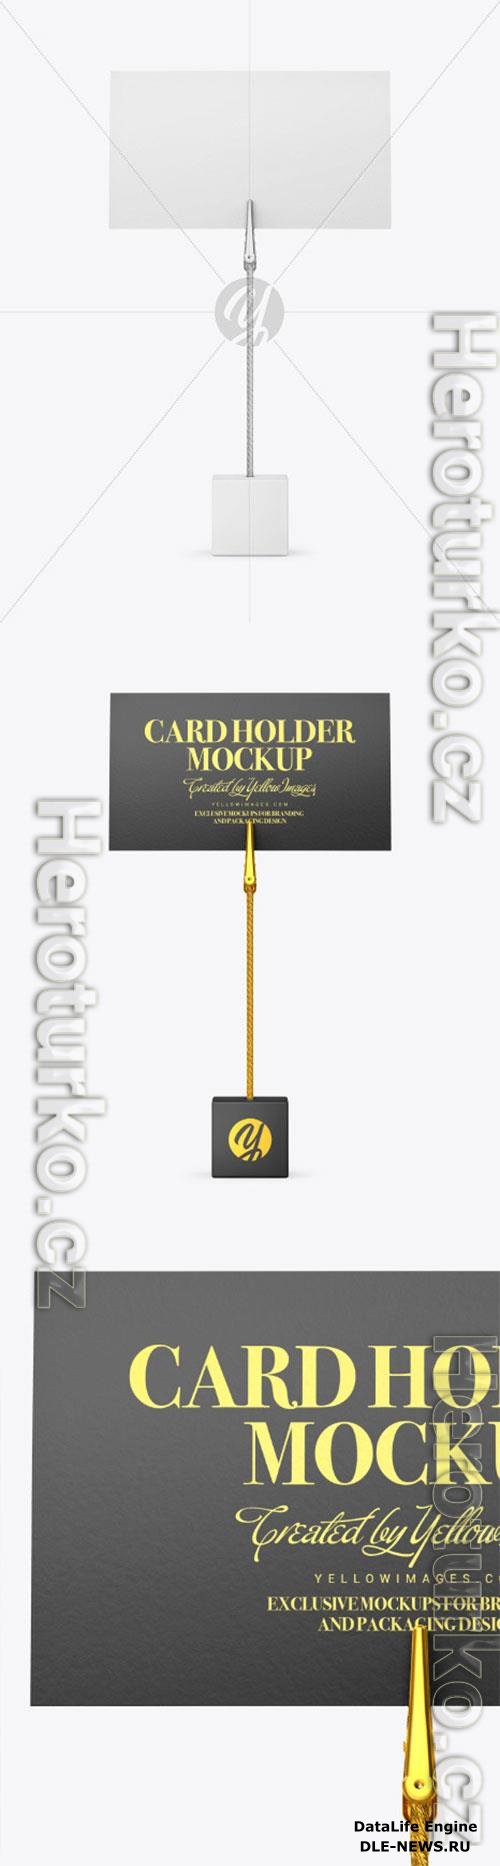 Card Holder Mockup 86536